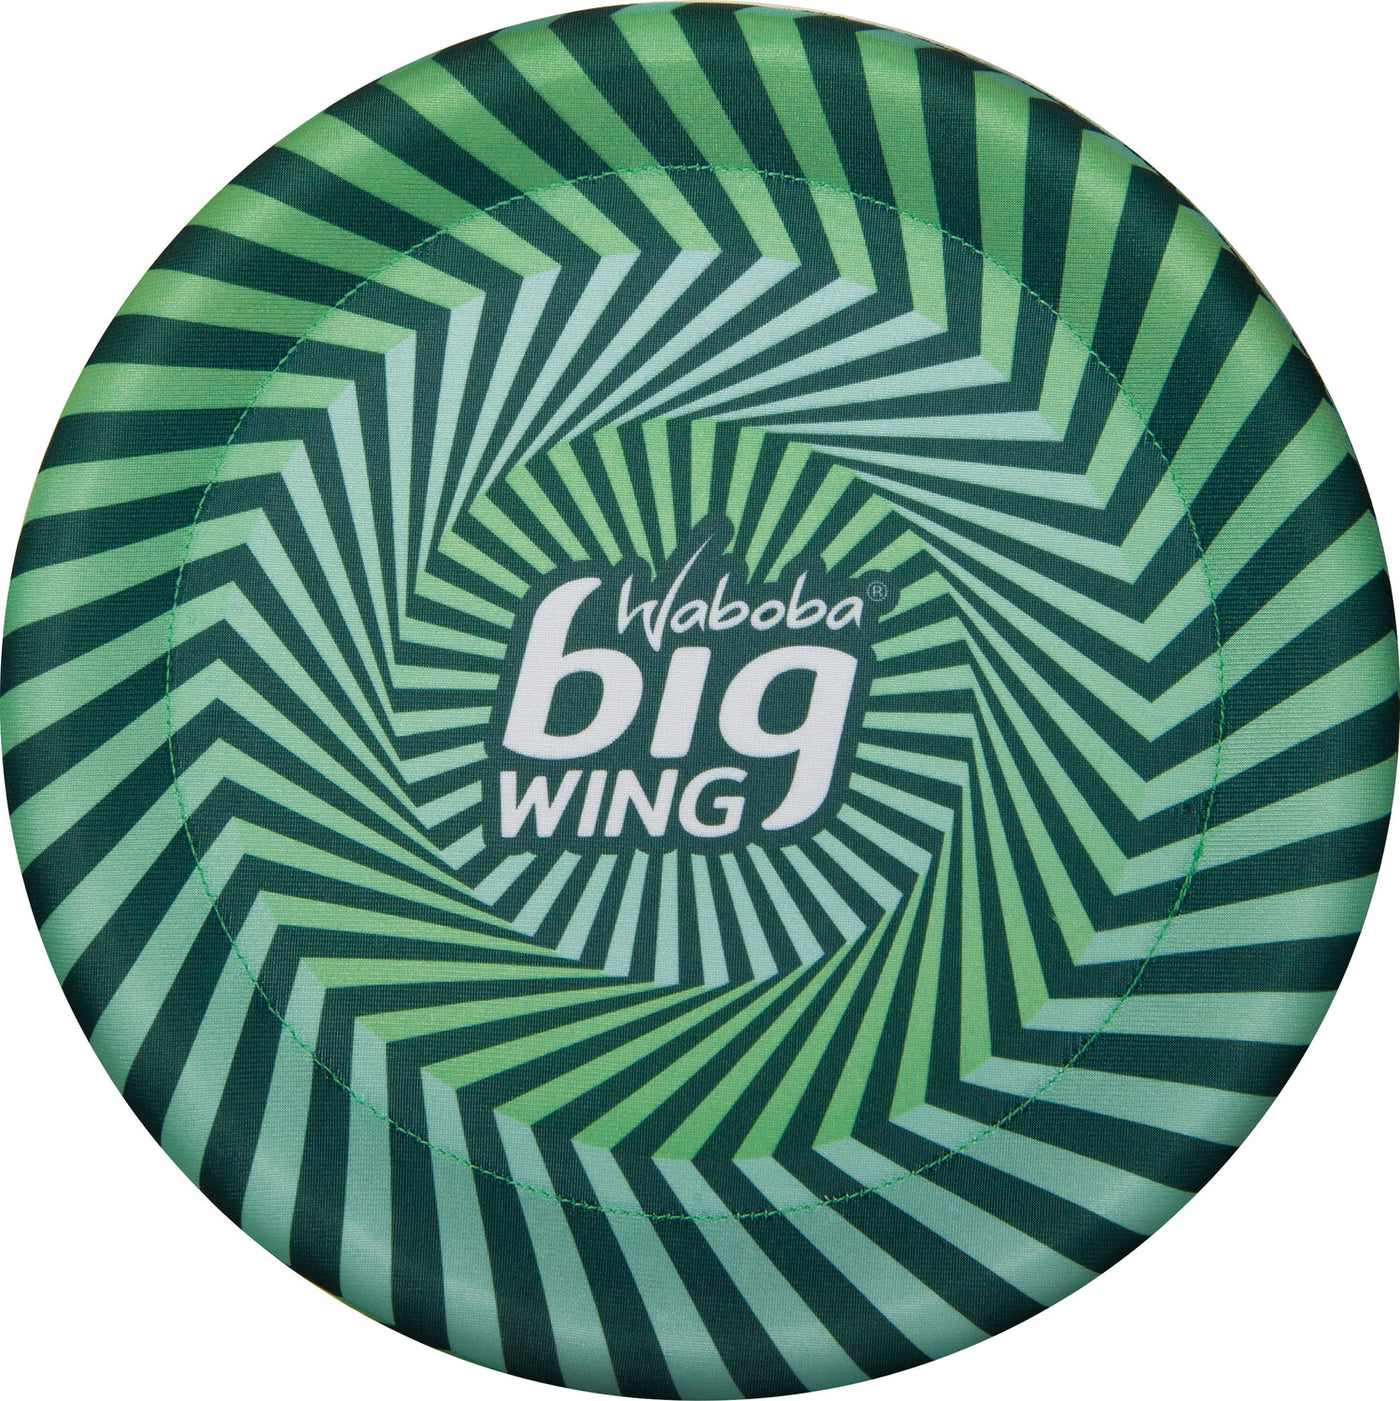 Waboba Big Wing Disc